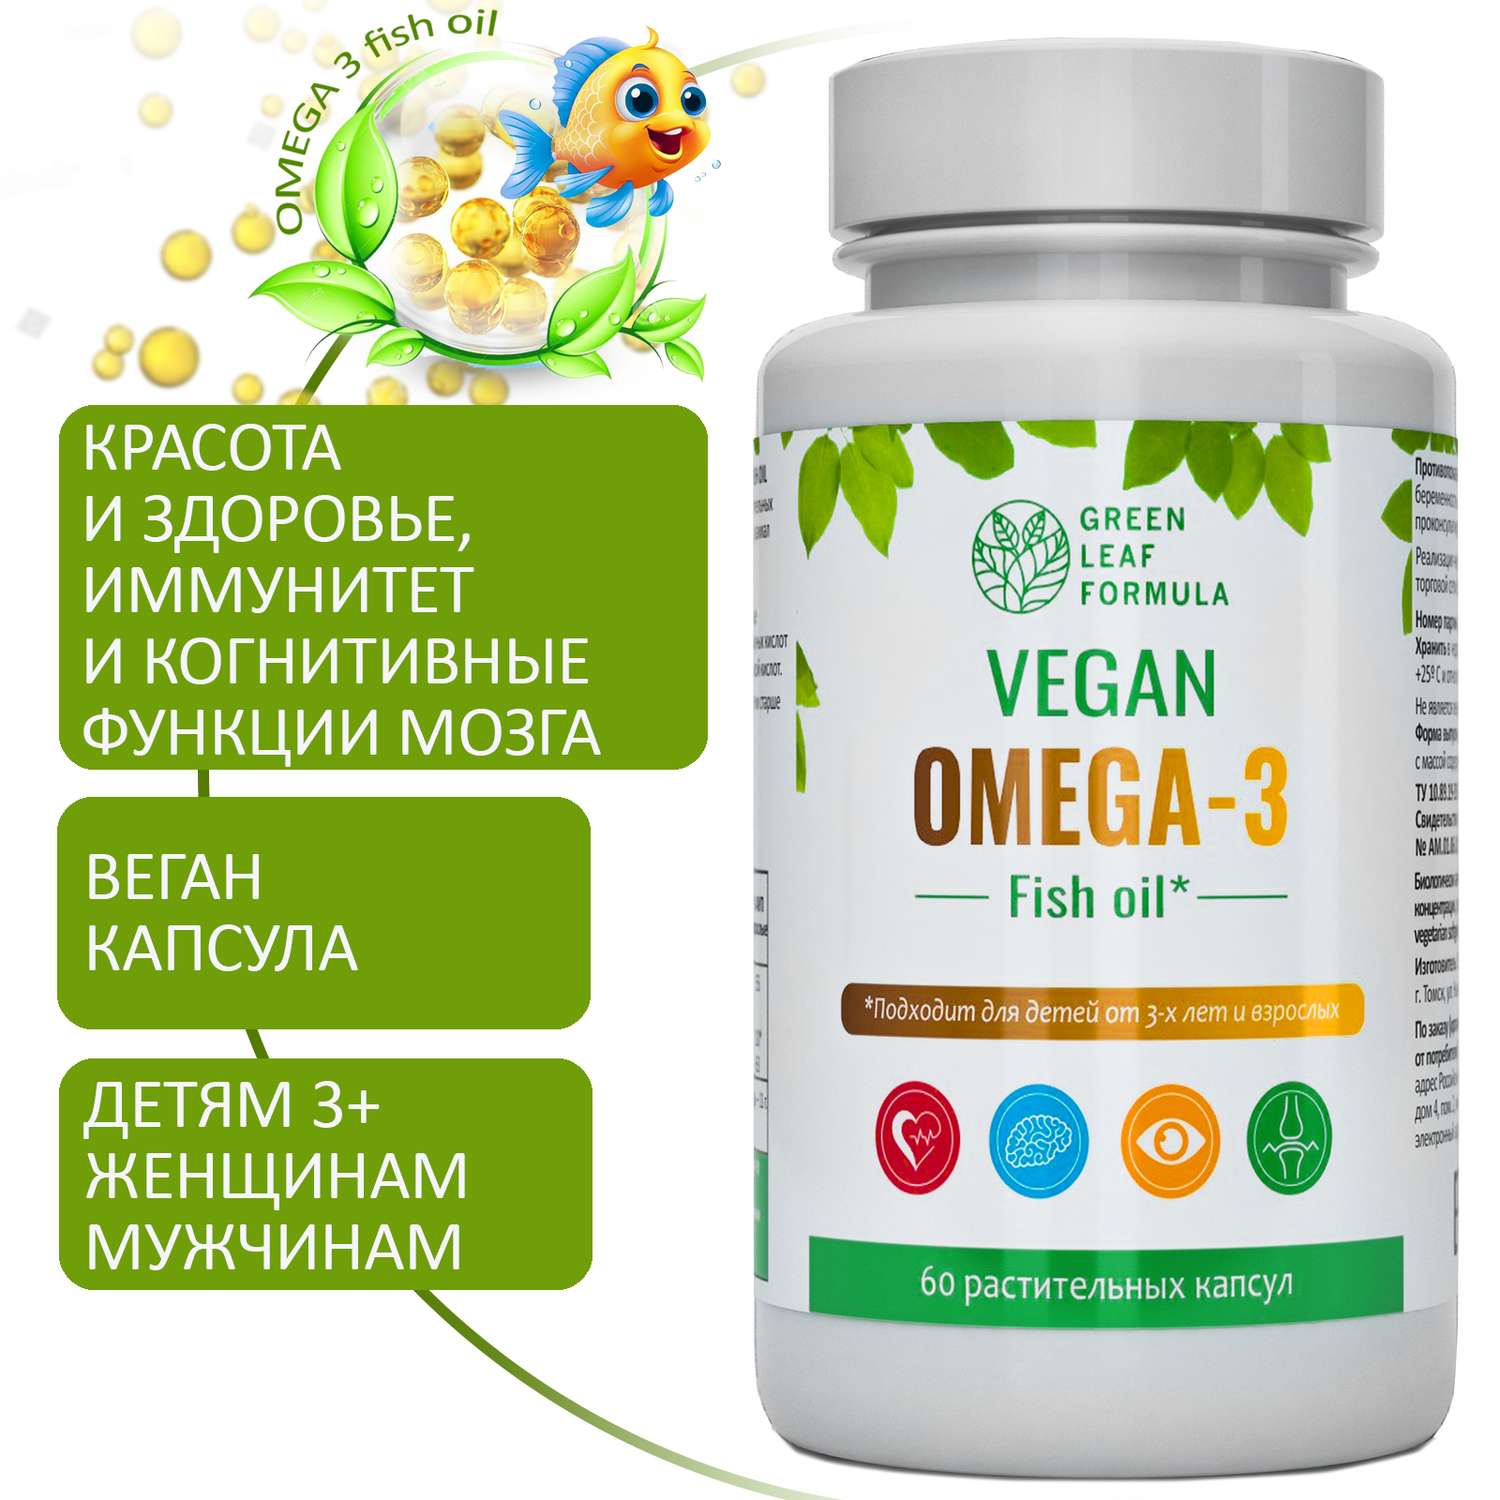 Омега 3 капсула ВЕГАН Green Leaf Formula рыбий жир витамины для детей от 3 лет и взрослых вегетарианская - фото 1